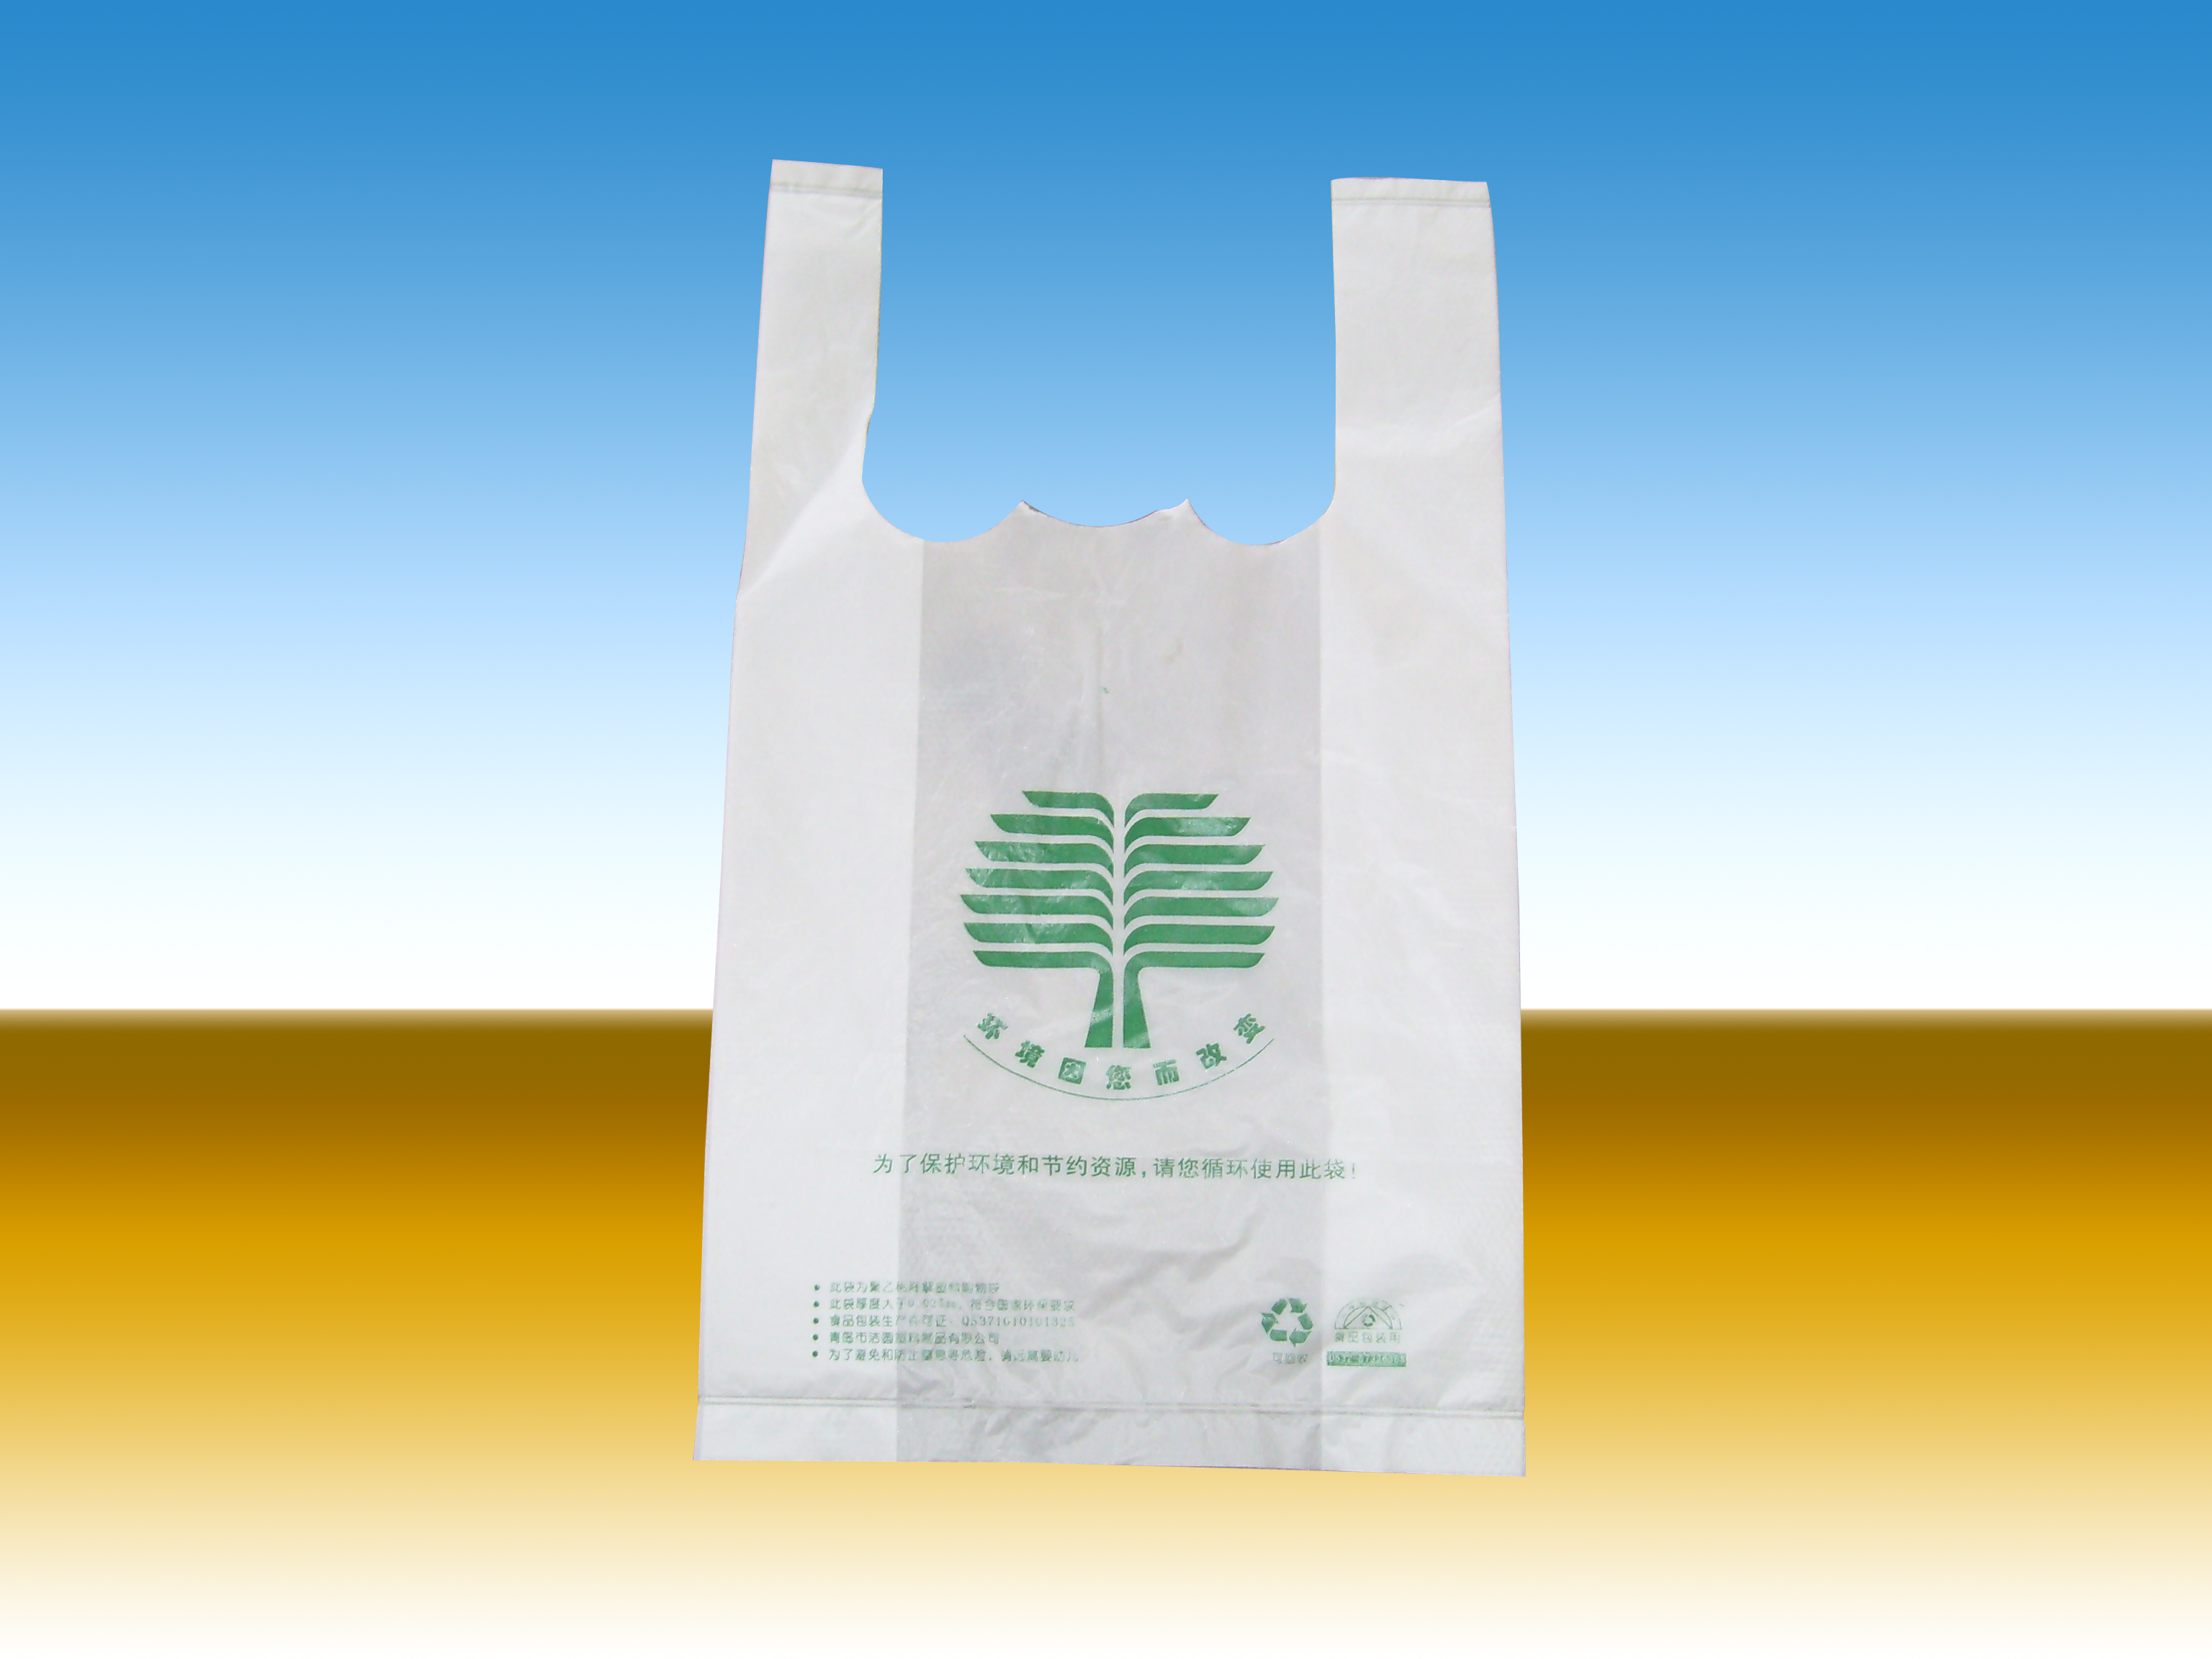 塑料袋 青岛塑料袋;环保塑料袋;服装袋;复膜袋;真空包装;广告袋; 青岛洁圆塑料制品有限公司